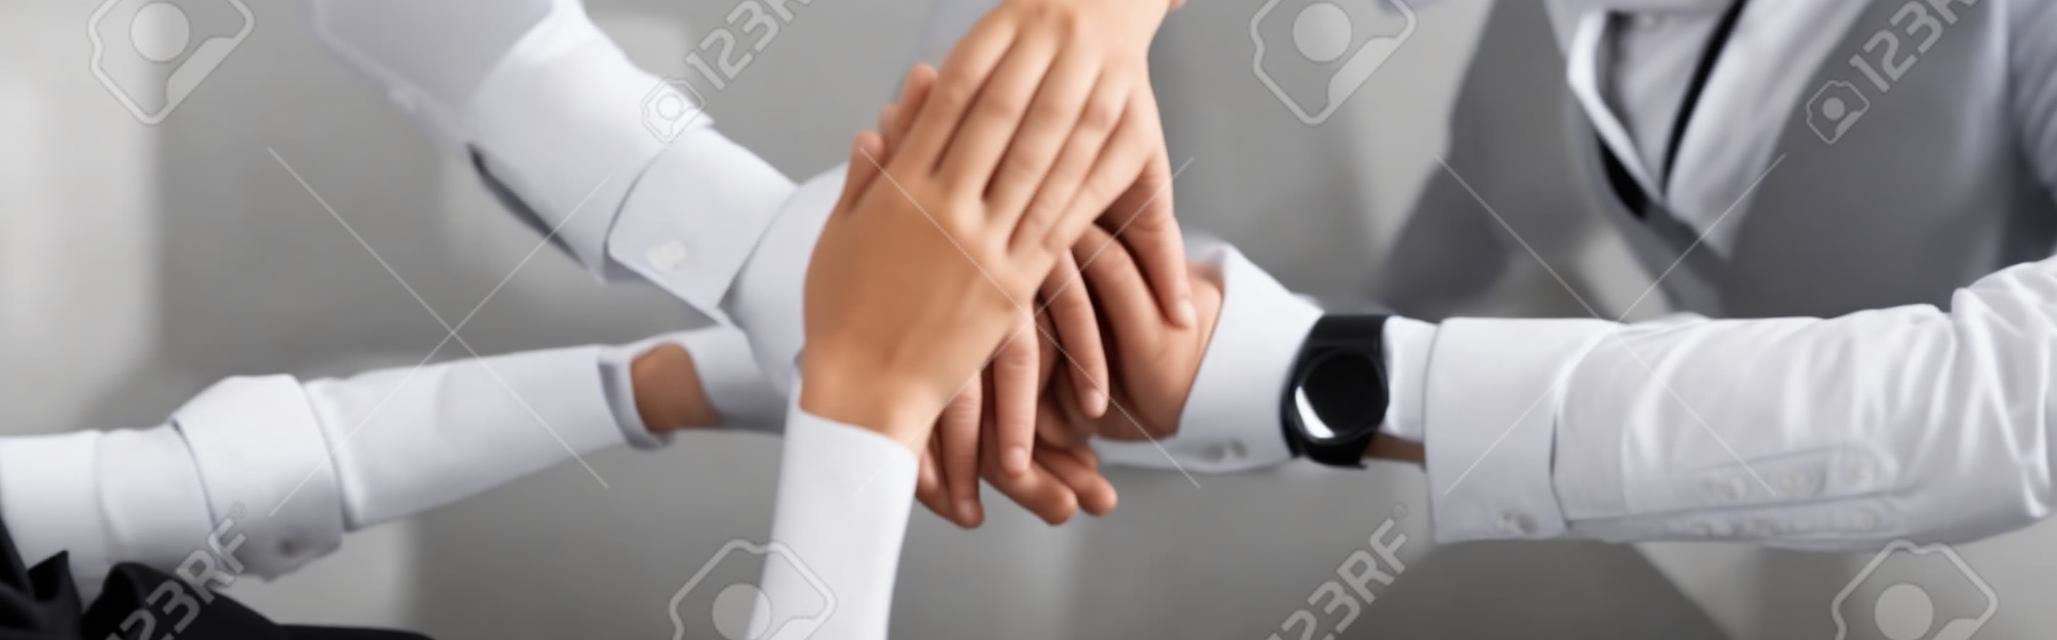 scatto panoramico di donna d'affari e uomini d'affari che uniscono le mani